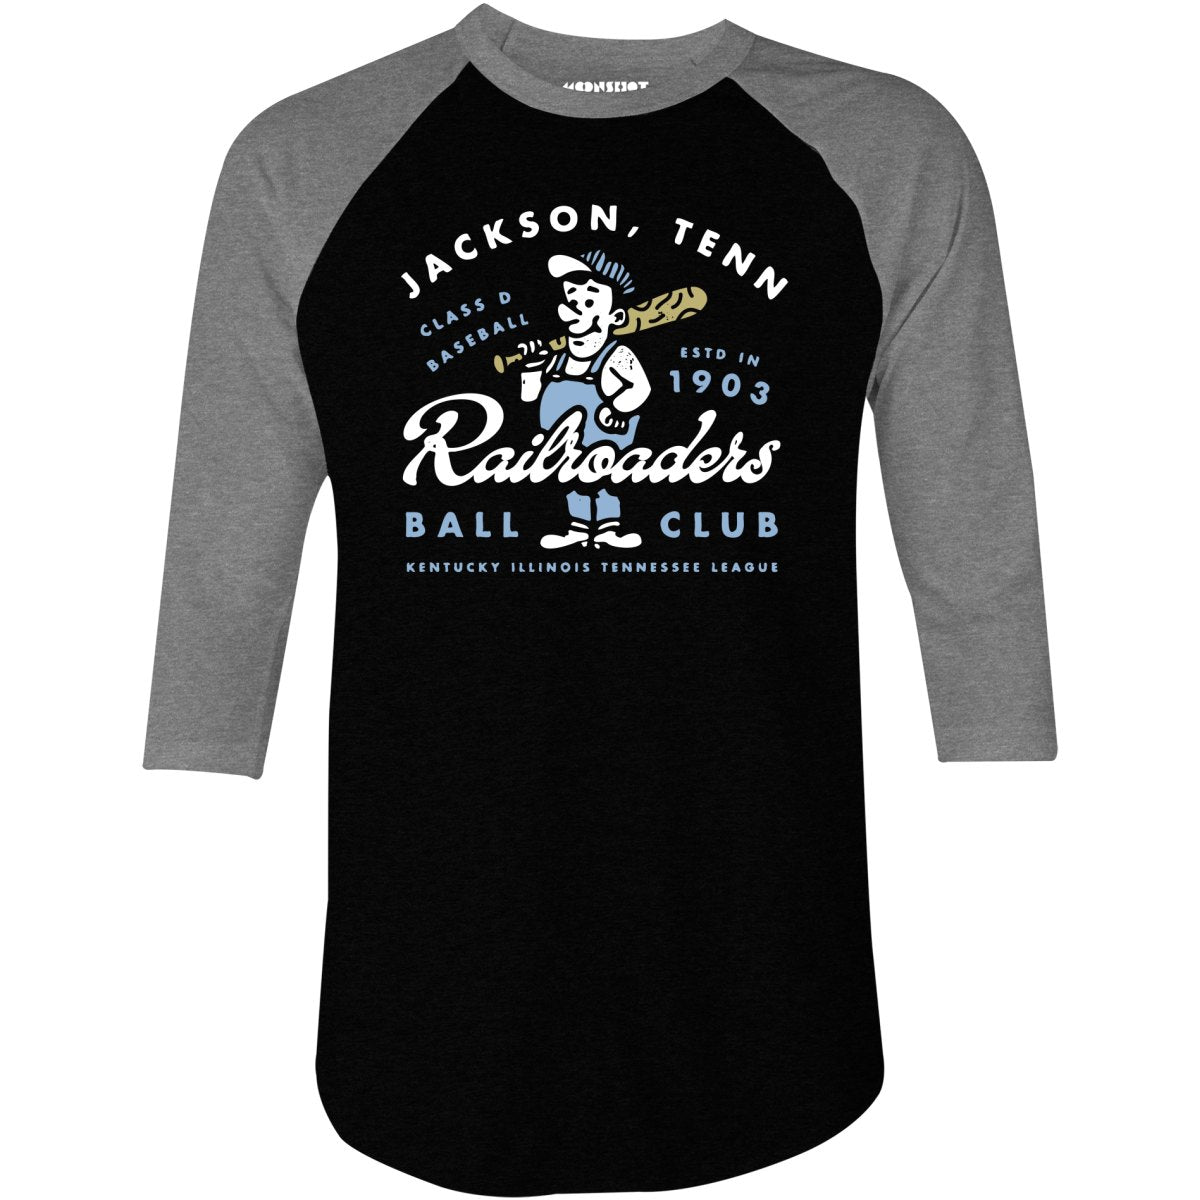 Jackson Railroaders - Tennessee - Vintage Defunct Baseball Teams - 3/4 Sleeve Raglan T-Shirt